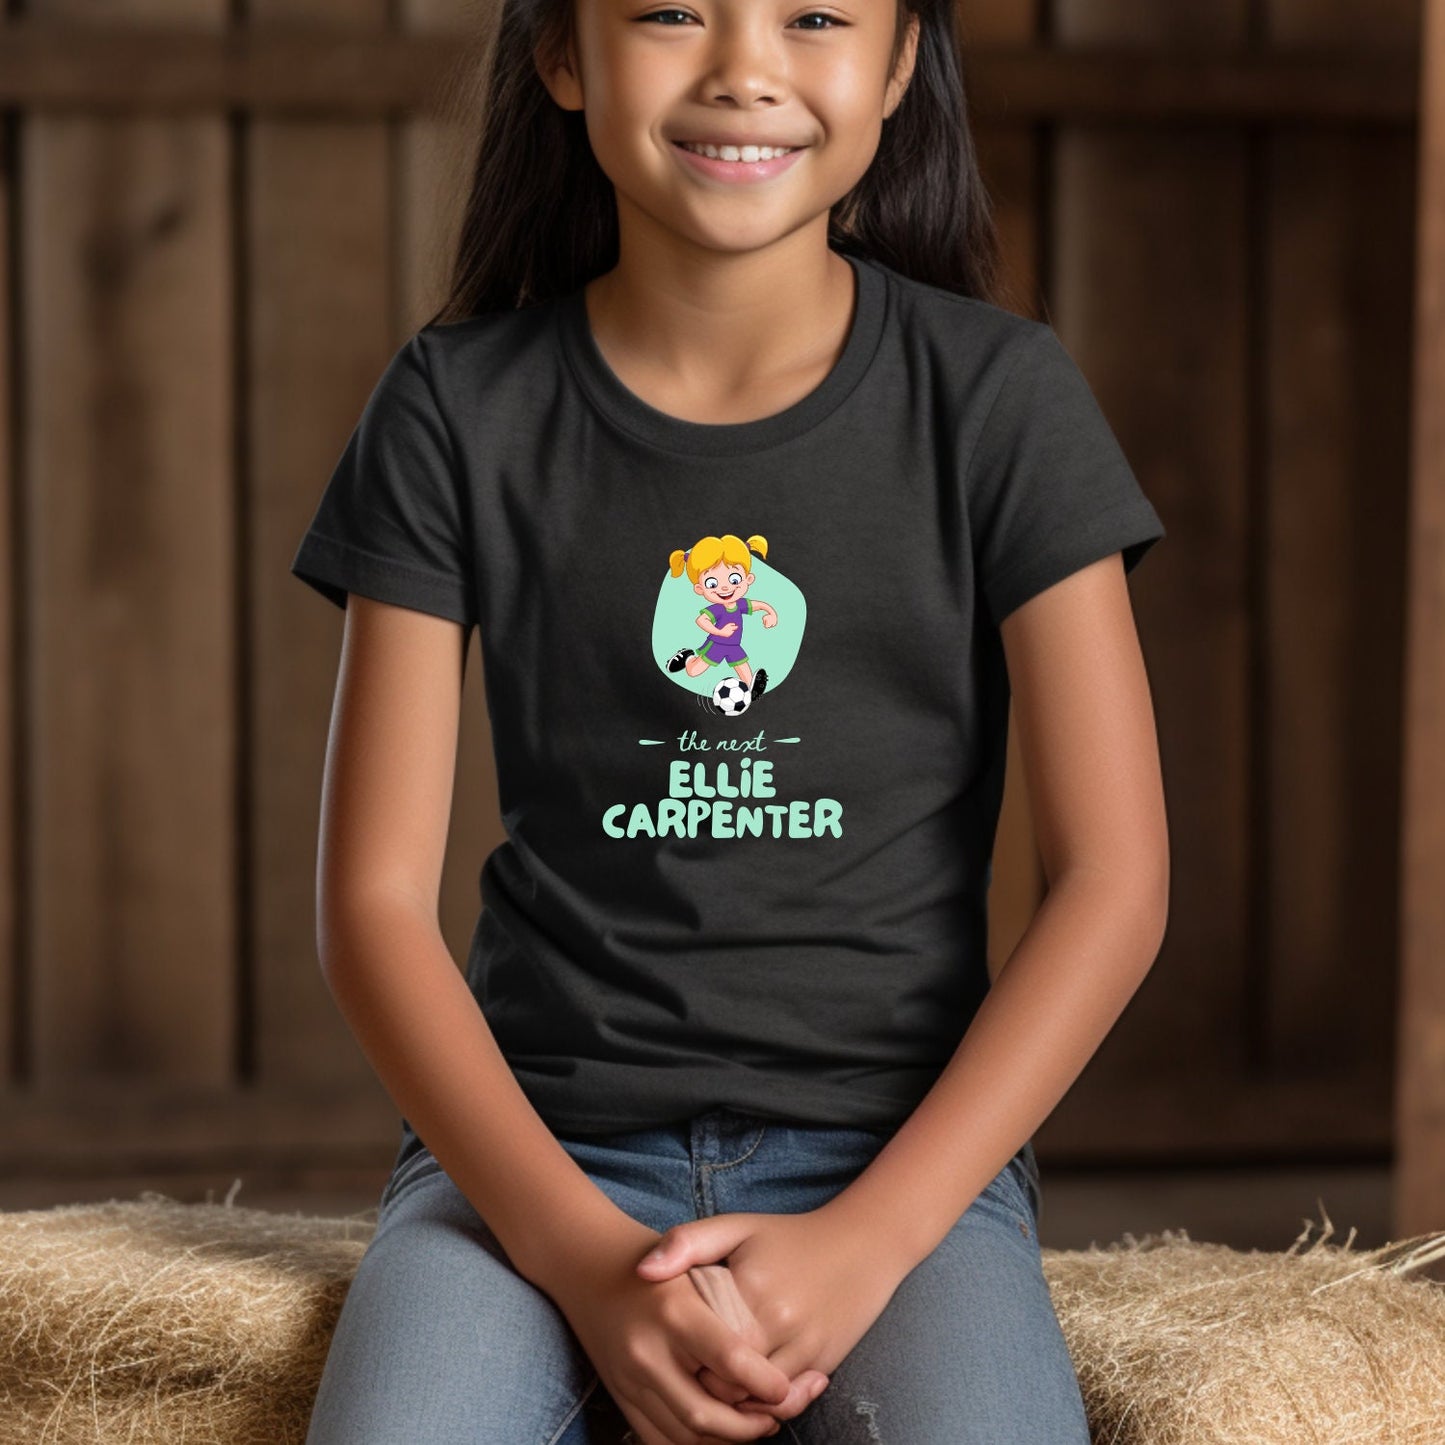 Ellie Carpenter Kids T-Shirt, The Matilda's Goalie, The Next Ellie Carpenter T-shirt, Australian Women's World Cup Kids T-Shirt, FIFA